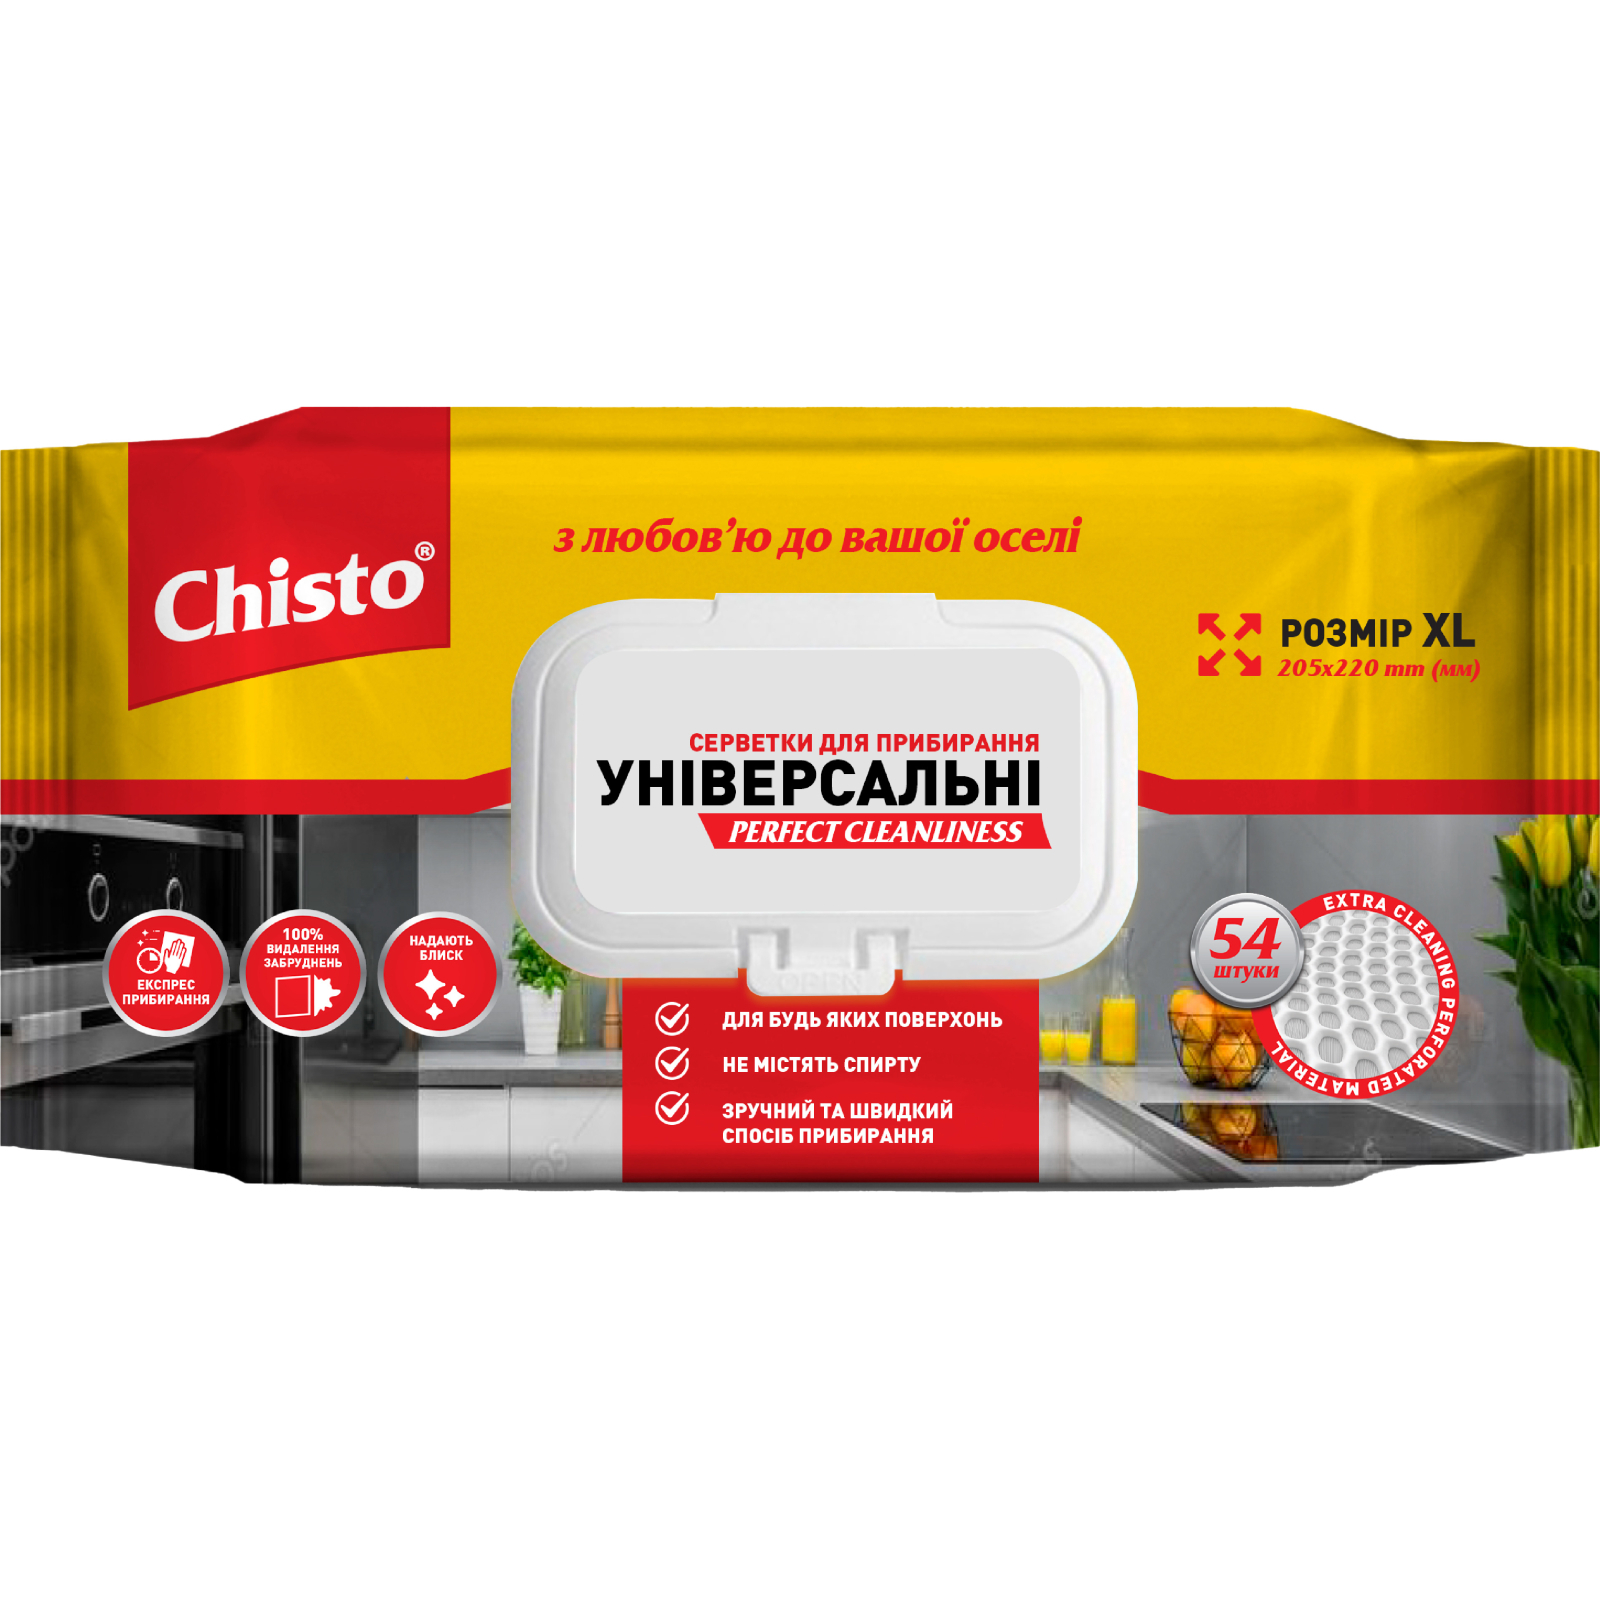 Салфетки для уборки Chisto Влажные универсальные с клапаном 54 шт. (4823098412373)